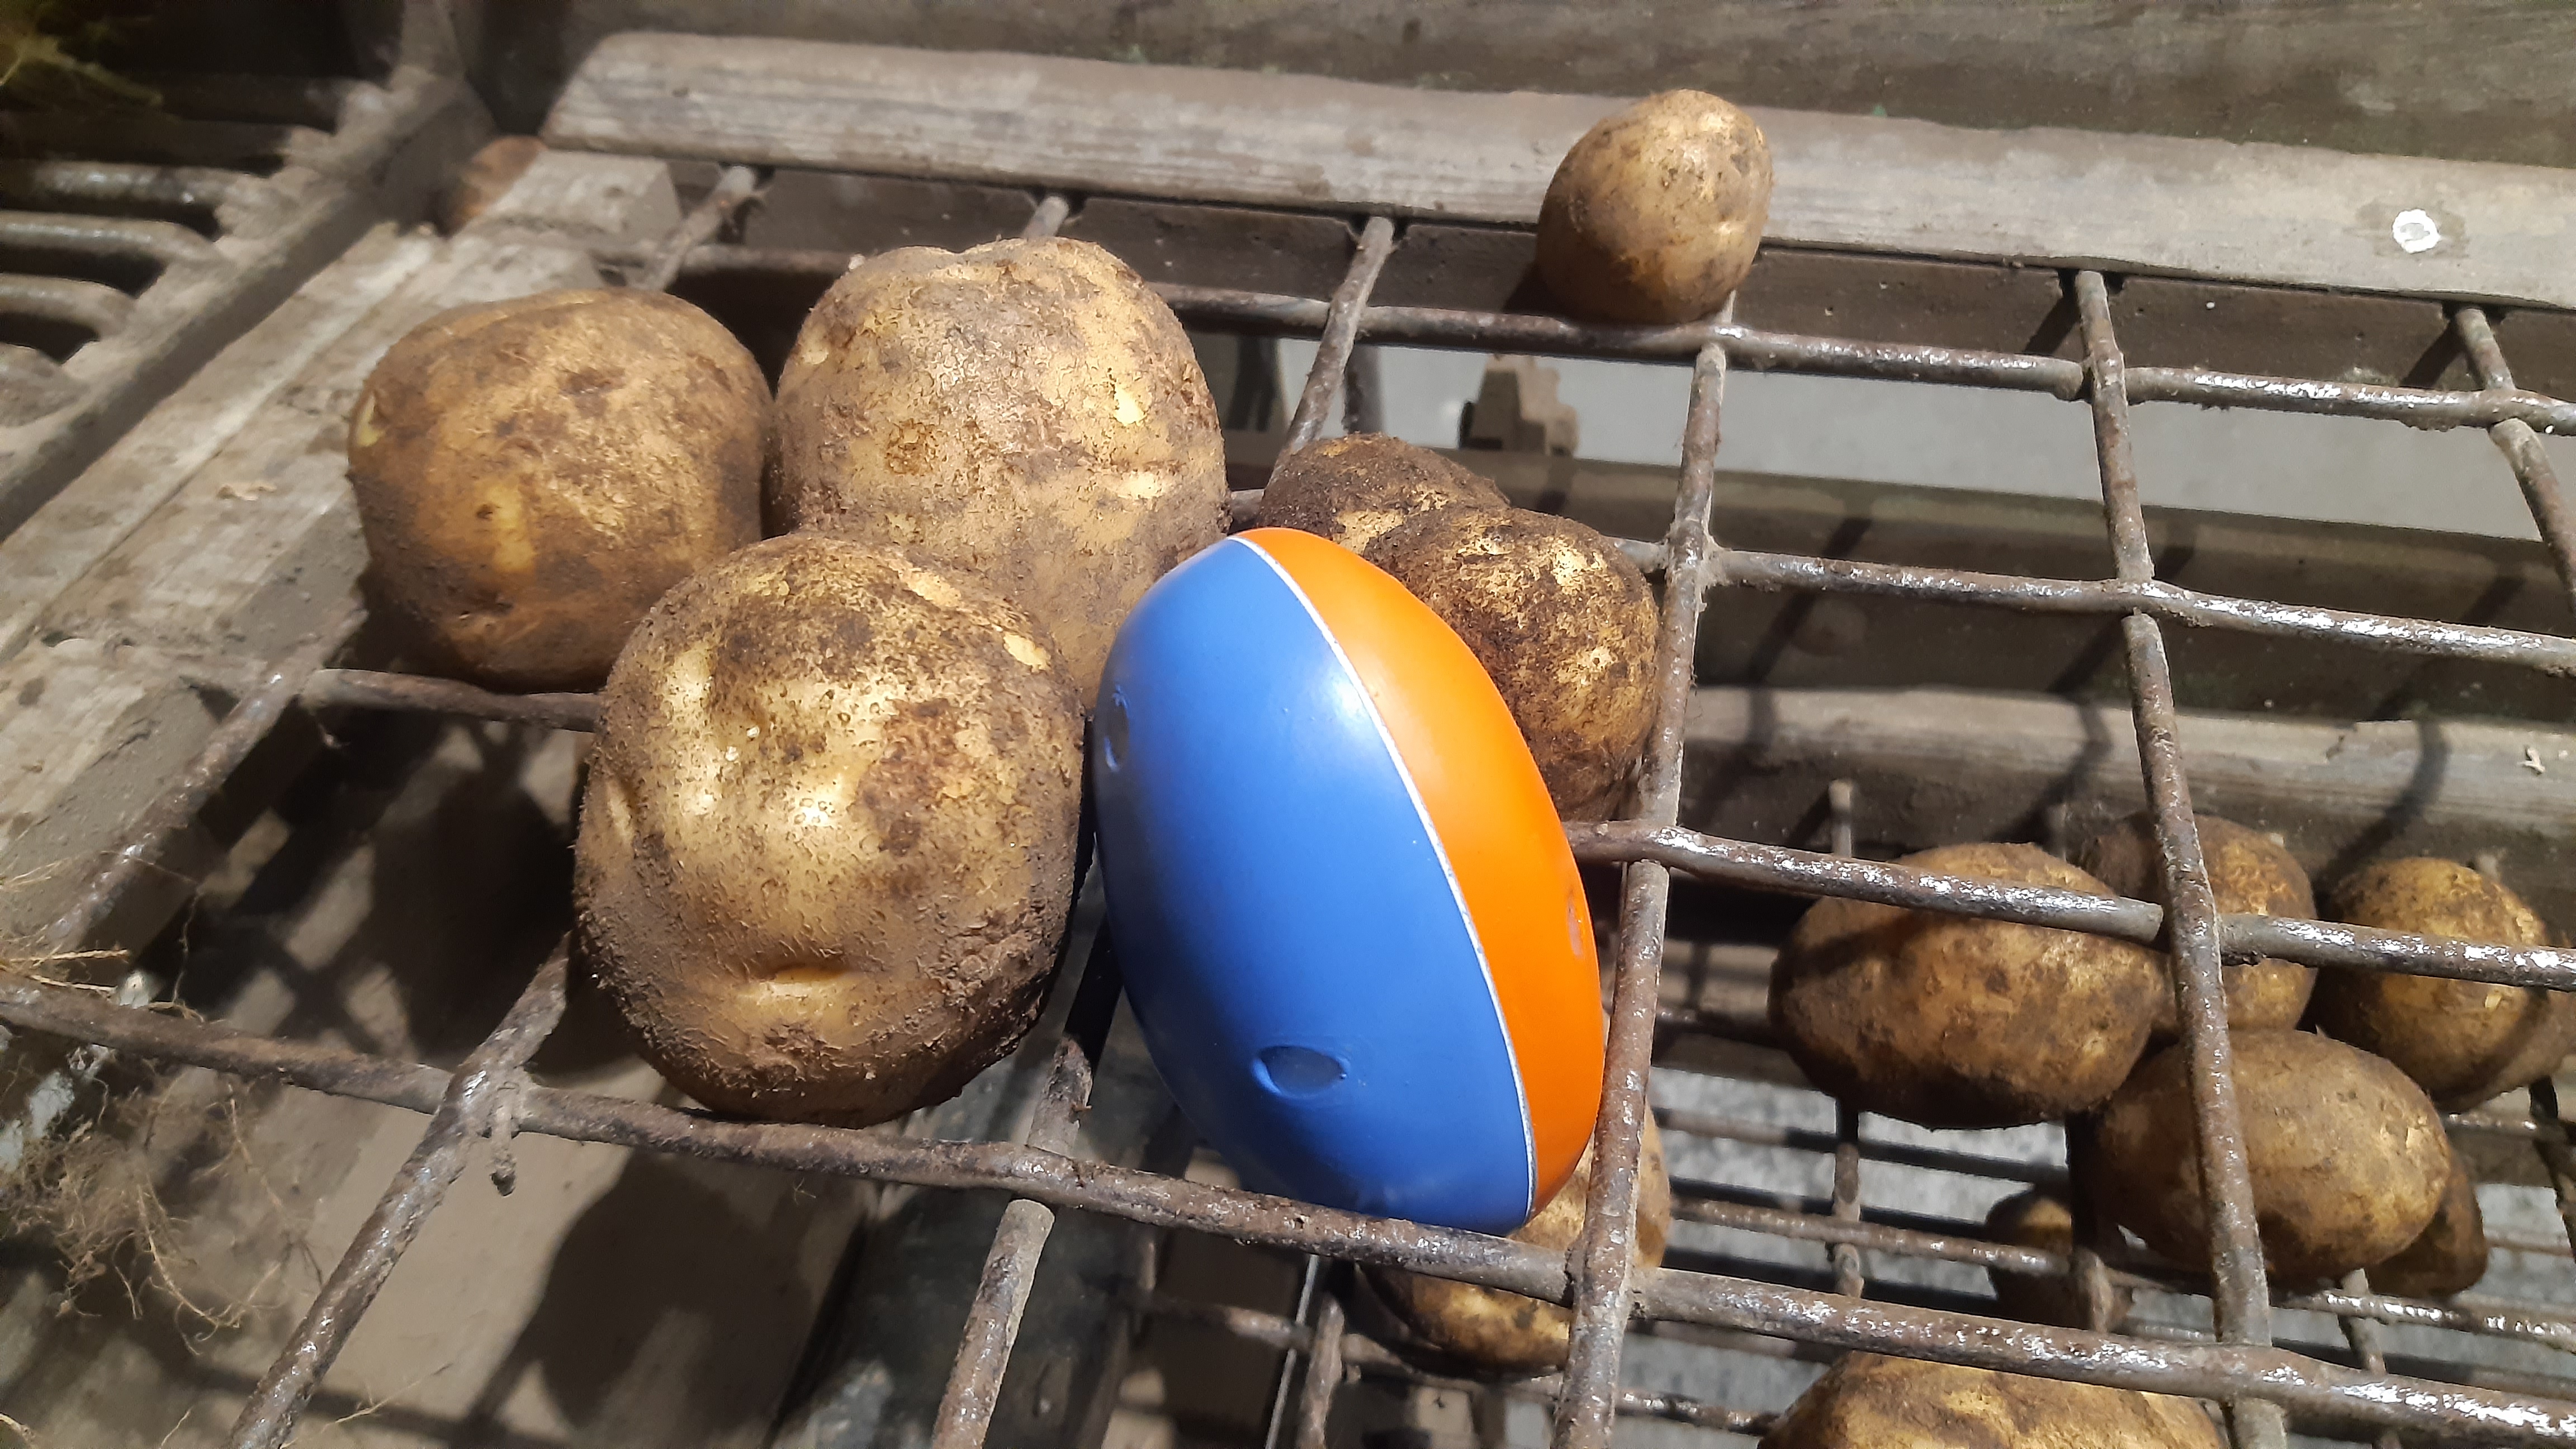 Den elektroniske kartoffel er et måleværktøj, der afslører, om kartoflerne får slag på deres vej gennem eksempelvis en kartoffeloptager. Foto: Esben Sangild.